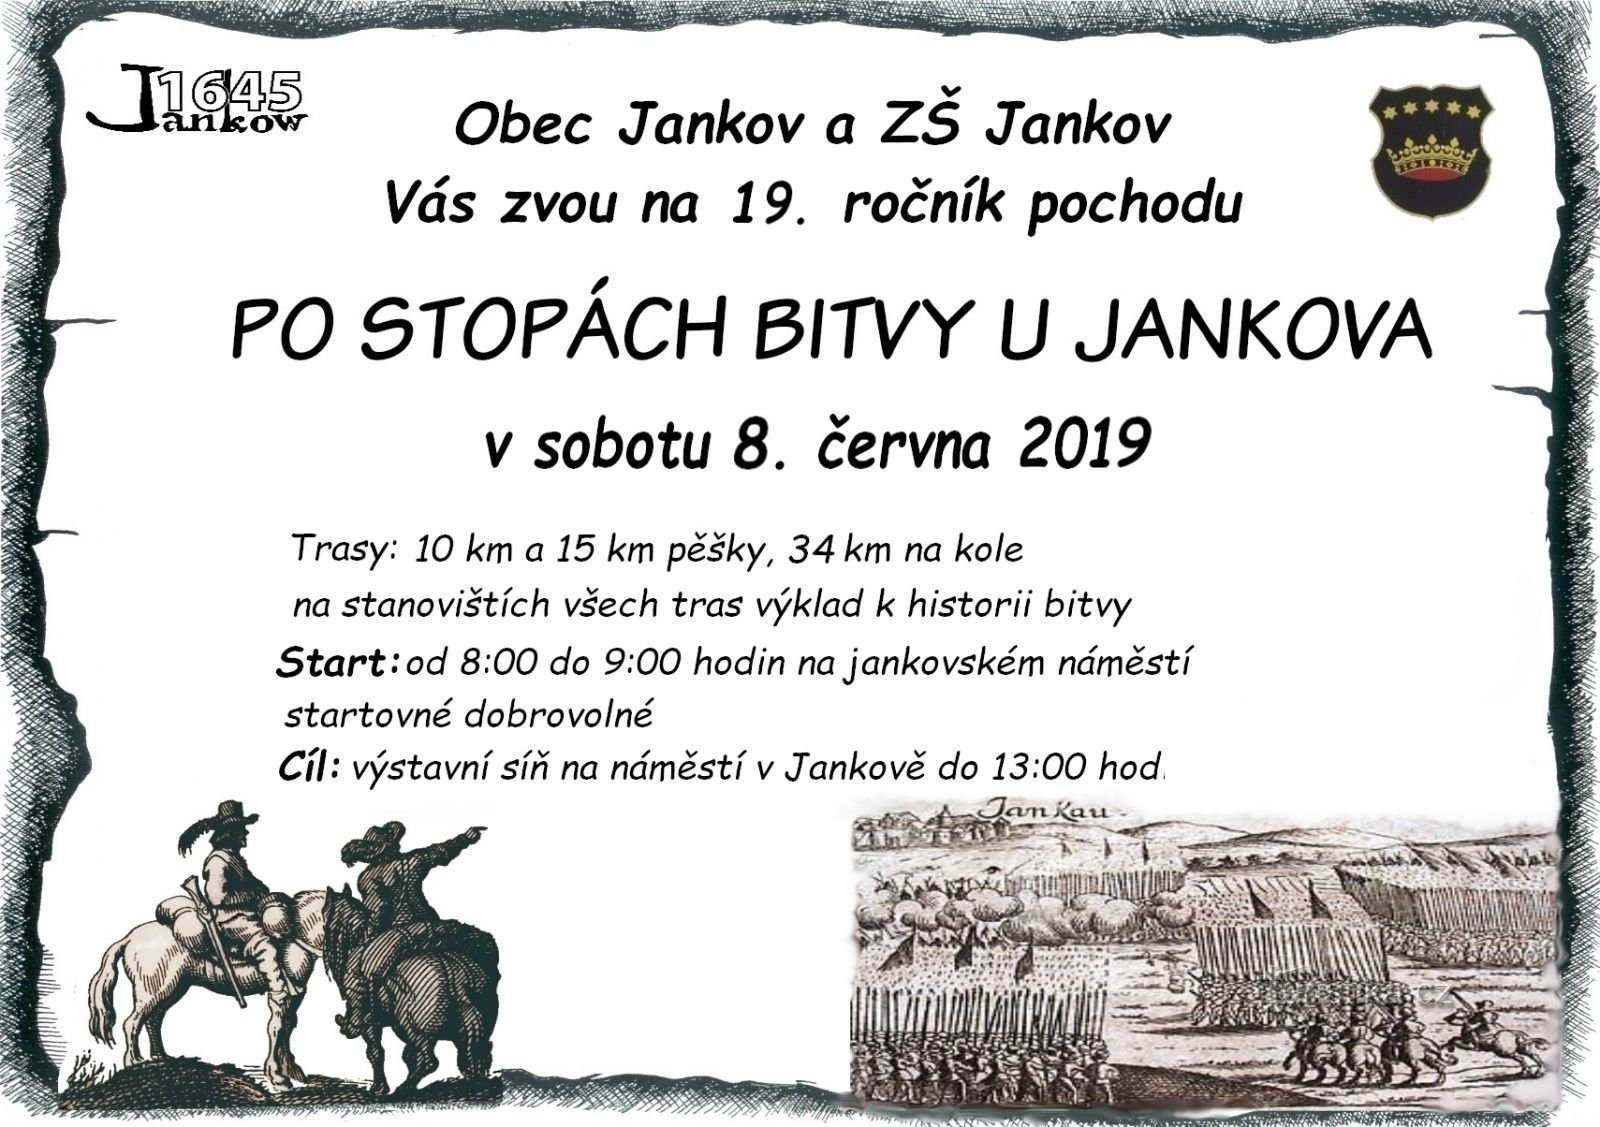 In marcia Sulle tracce della battaglia presso Jankovo ​​​​e poi in Viaggio nella Preistoria